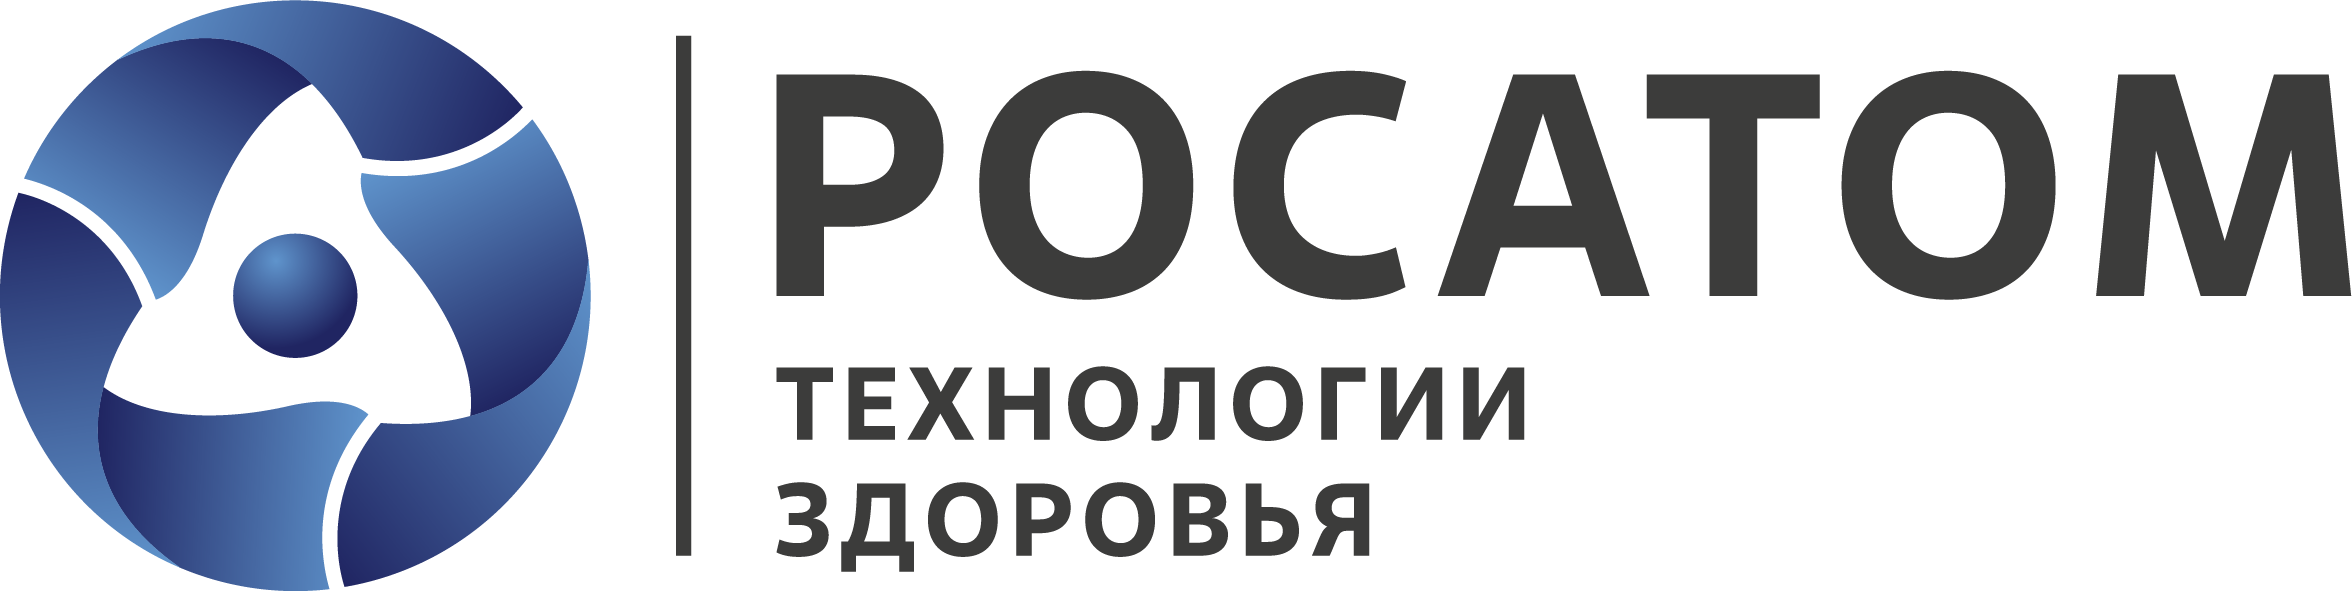 Логотип Русатом Хелскеа